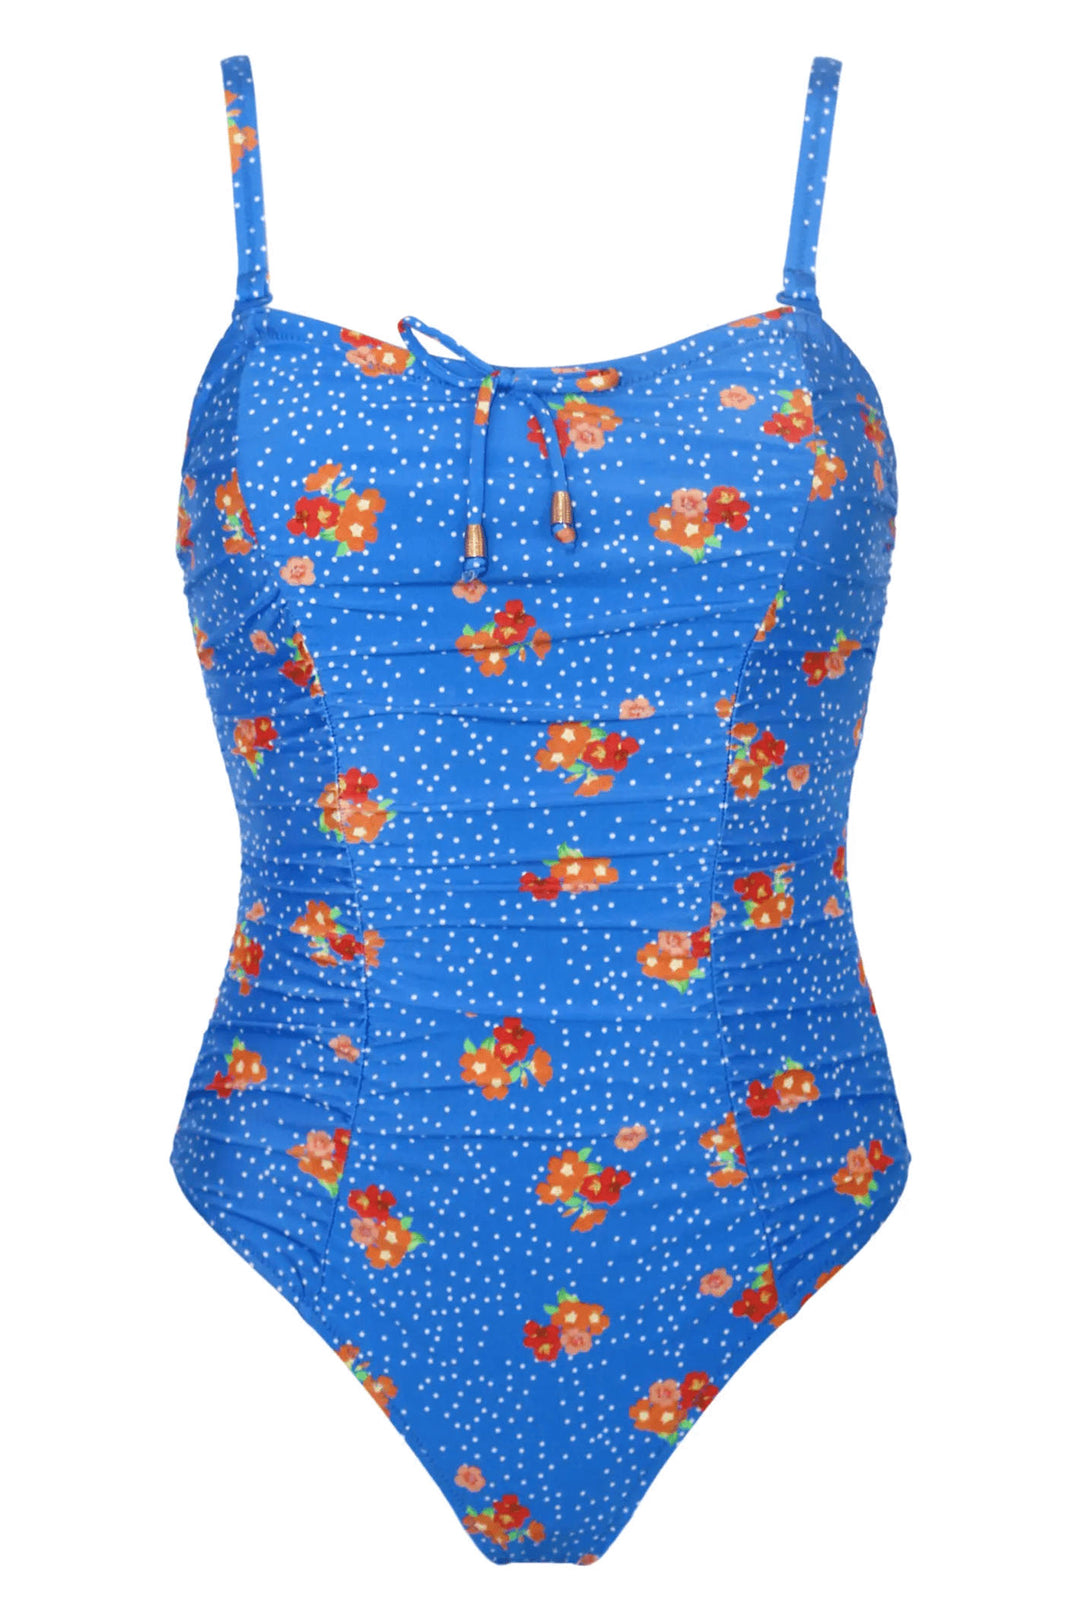 Pour Moi 24910 Santa Cruz Blue Floral Strapless Control Swimsuit - Shirley Allum